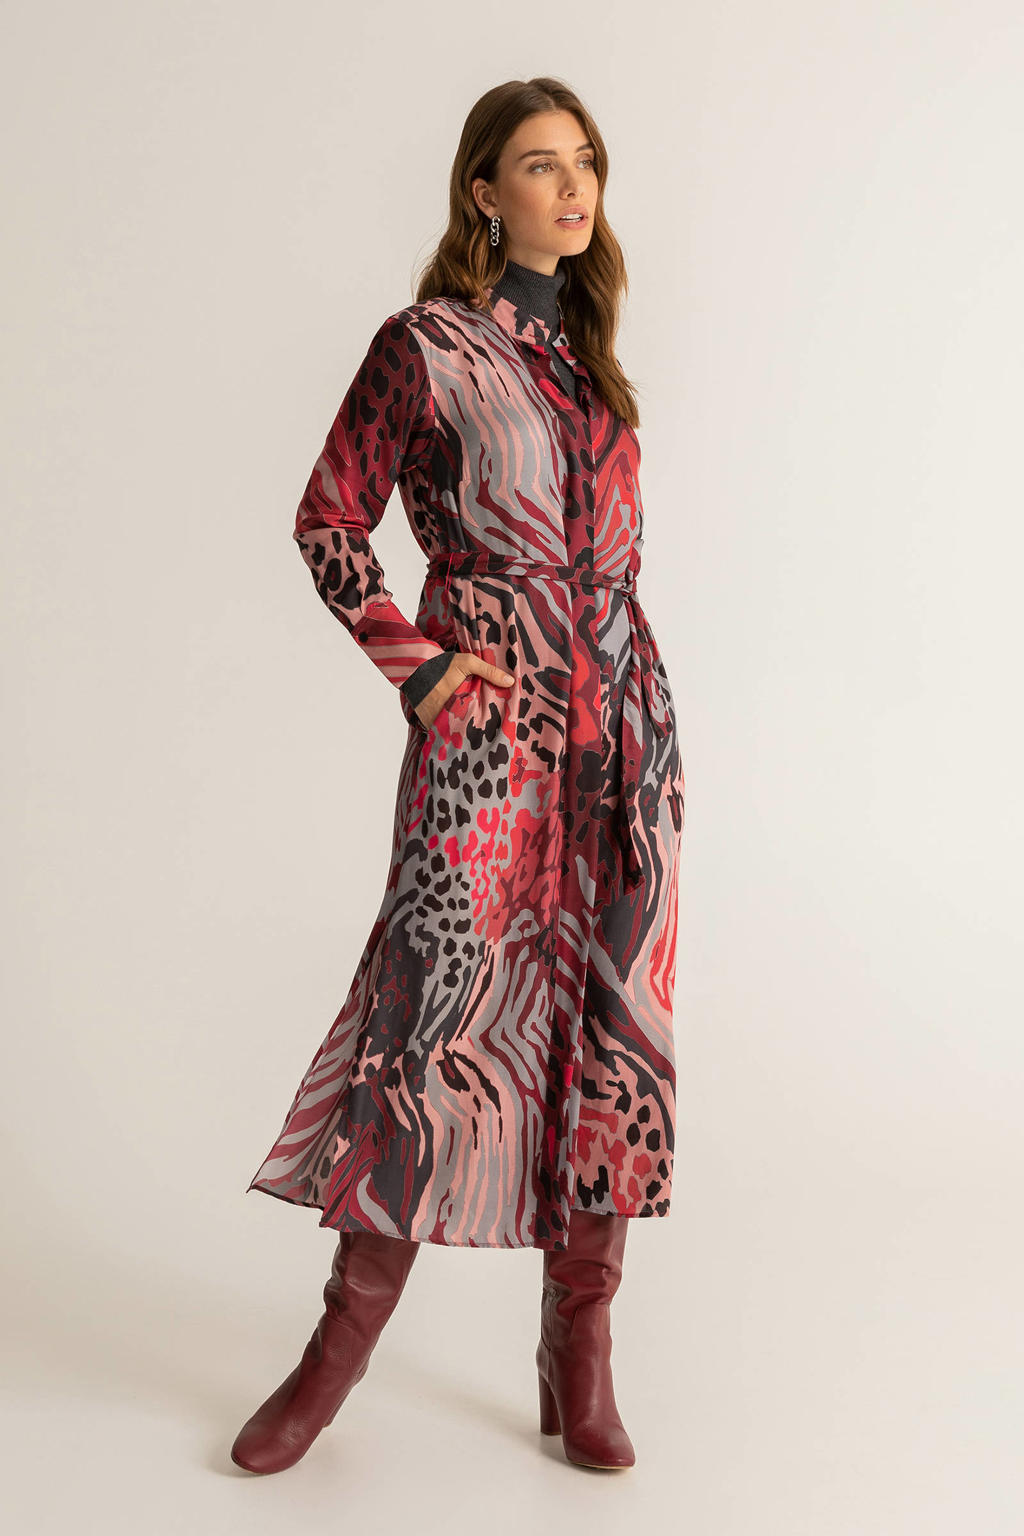 Expresso jurk met all over print donkerrood/lichtroze/grijsblauw